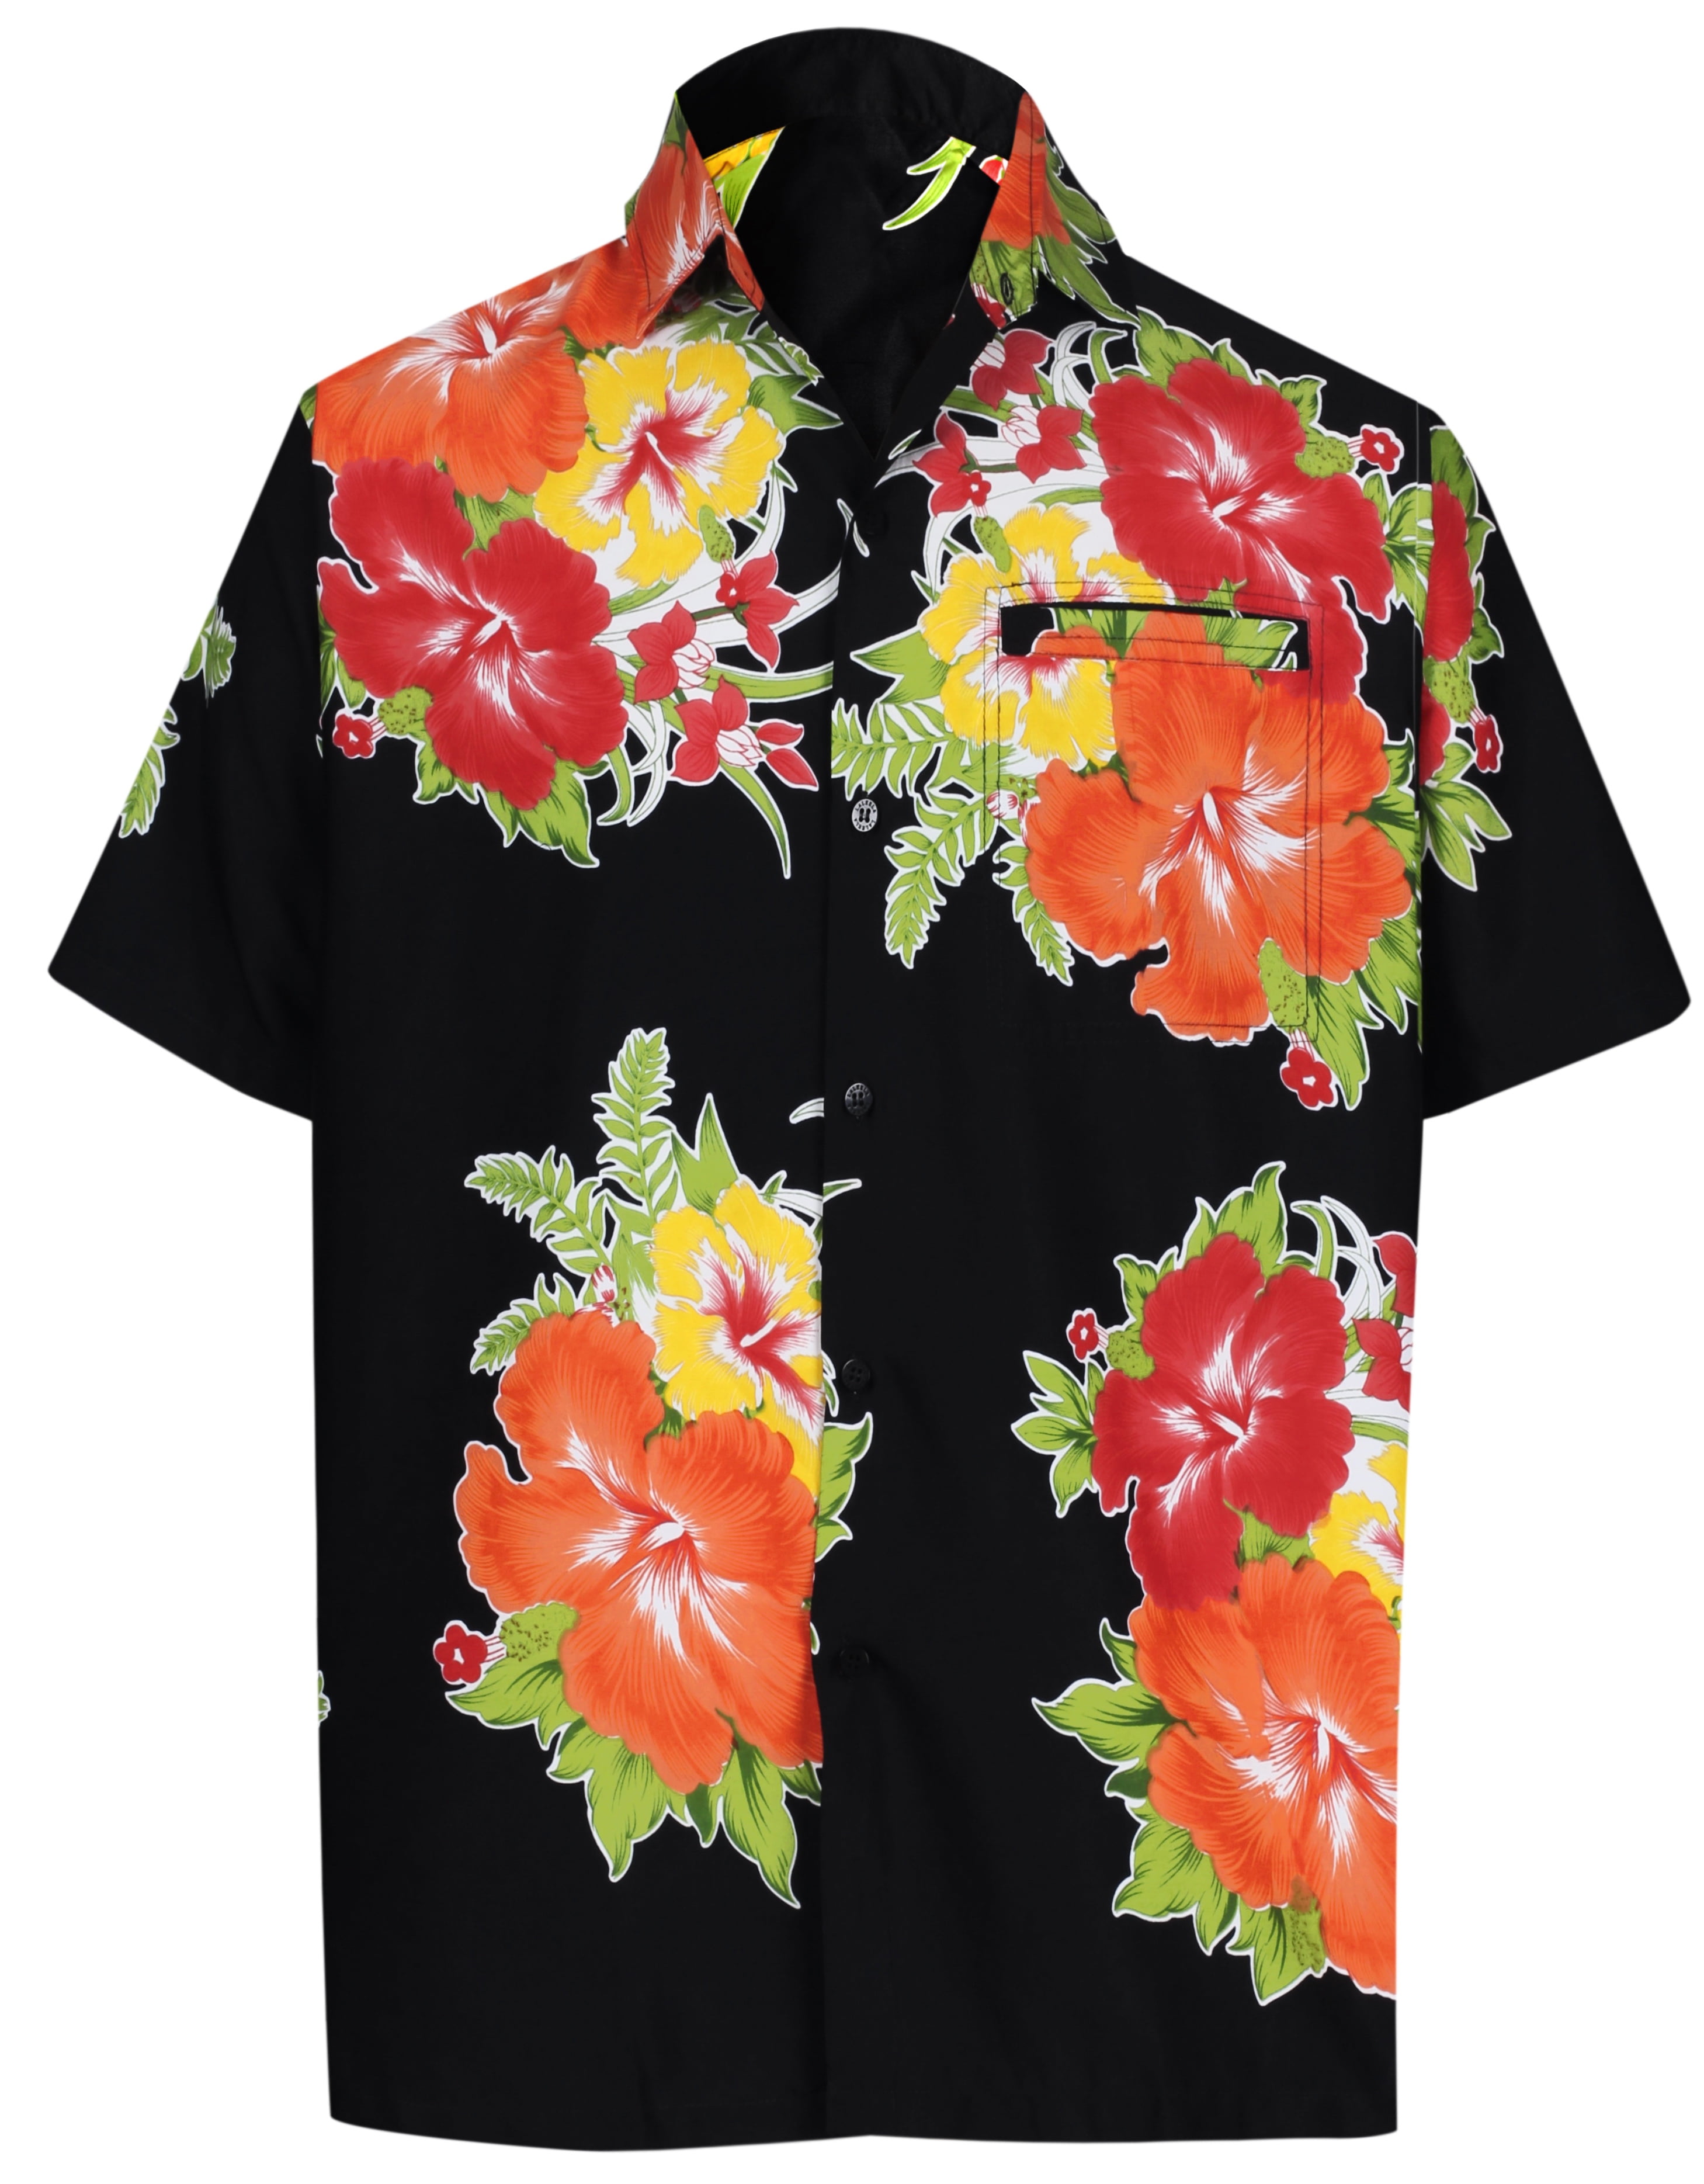 hibiscus flower shirt